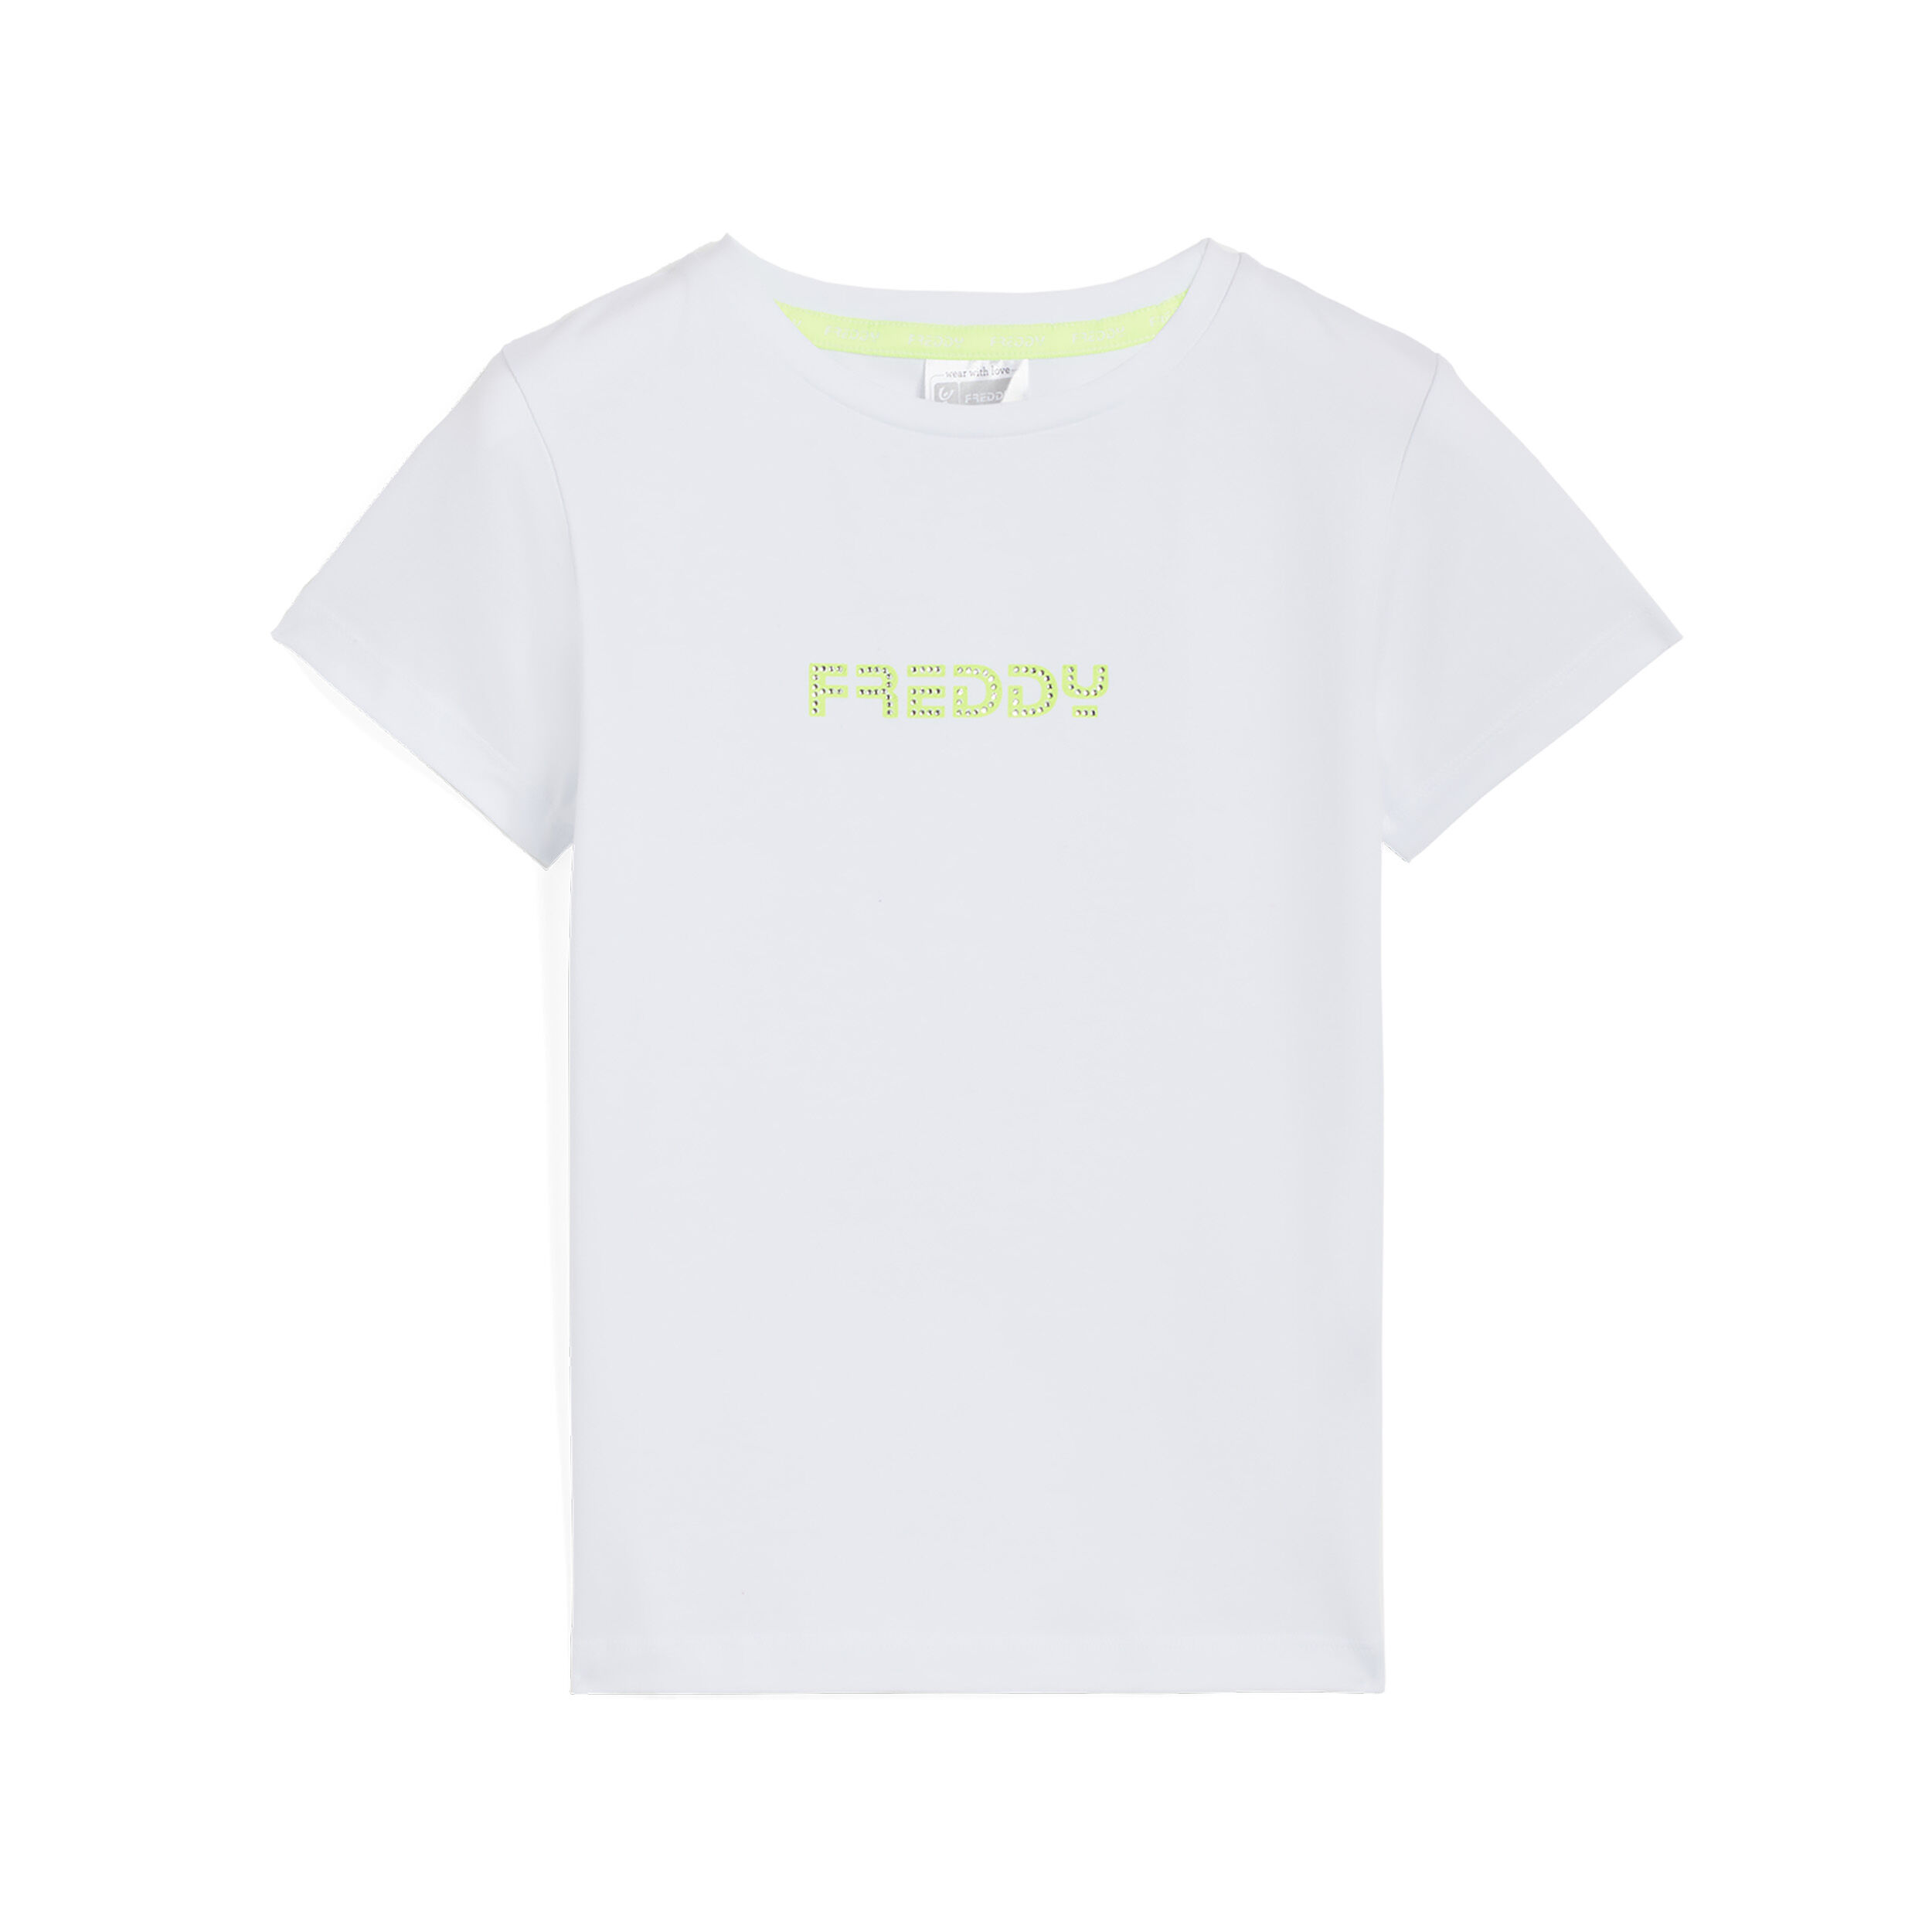 Freddy T-shirt da bambina con logo fluo decorato da strass Bianco Junior 4 Anni